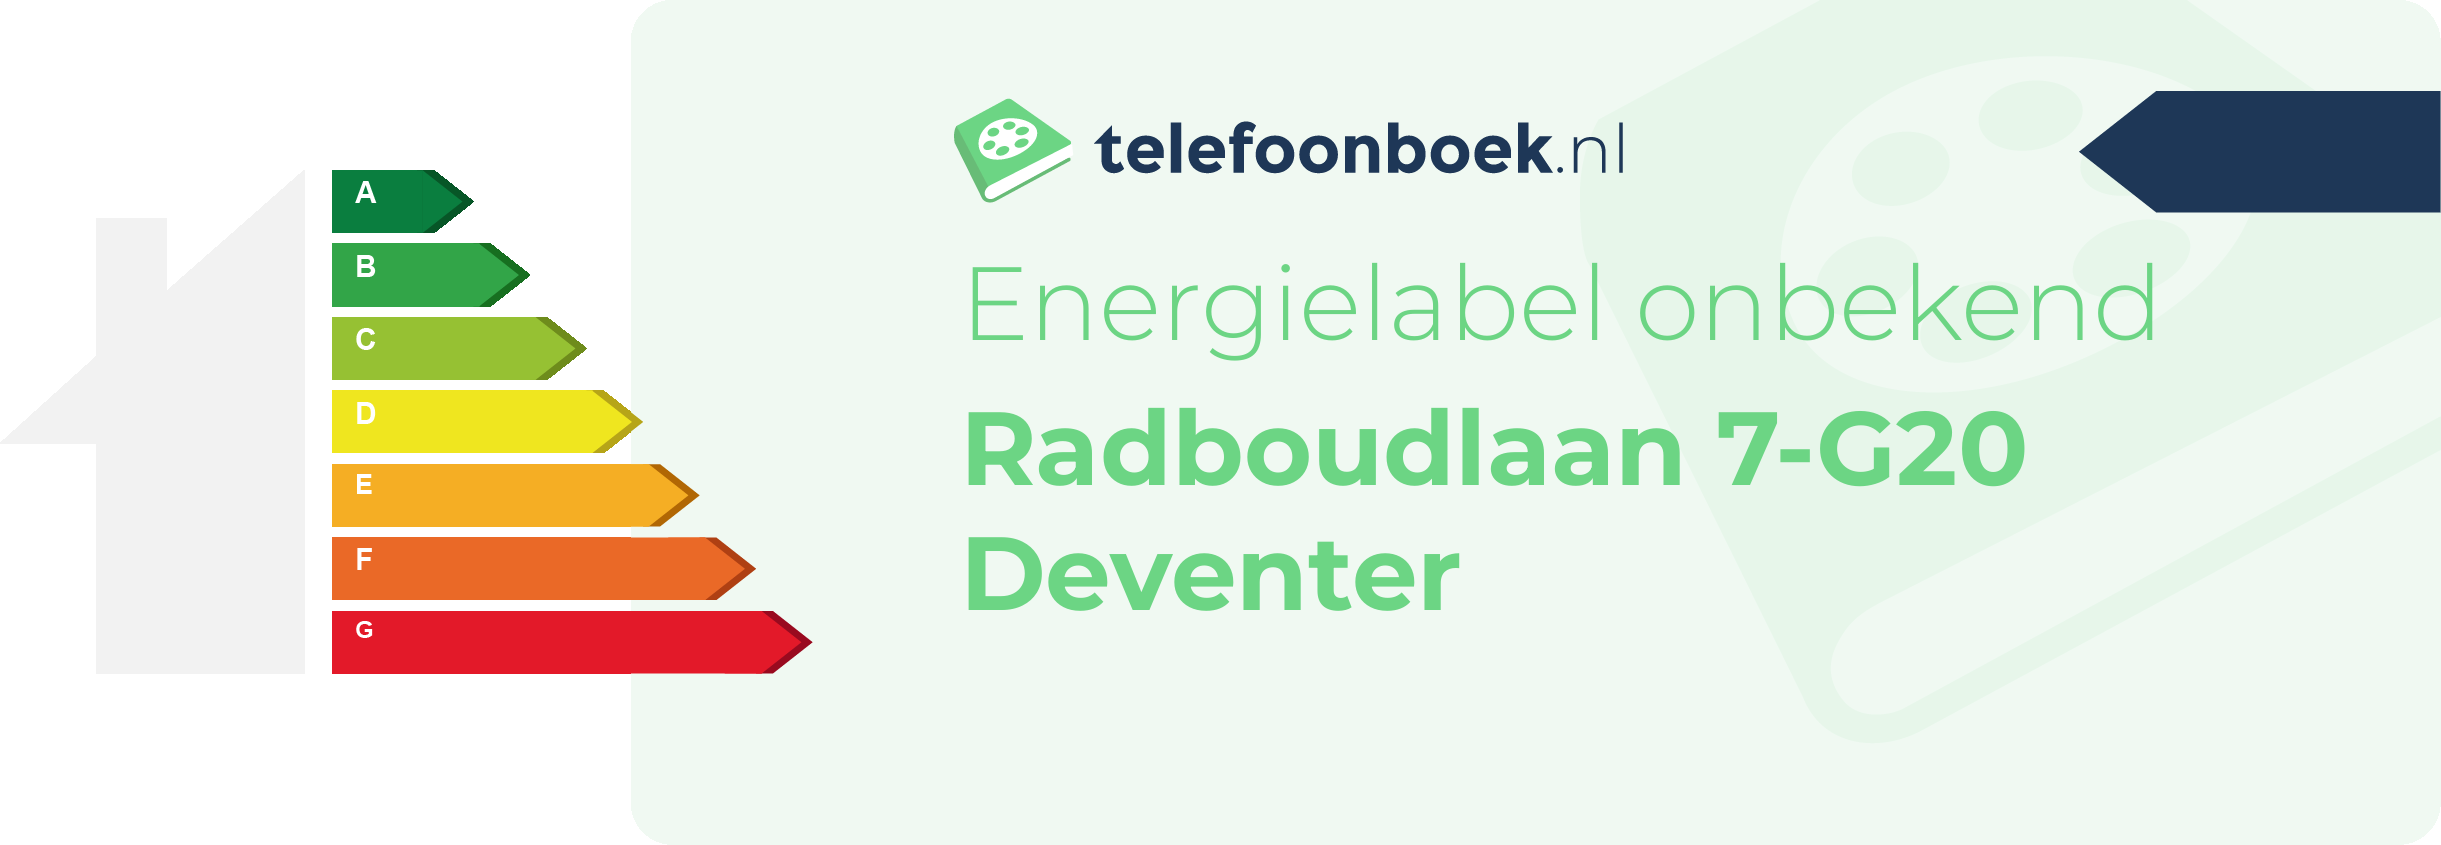 Energielabel Radboudlaan 7-G20 Deventer